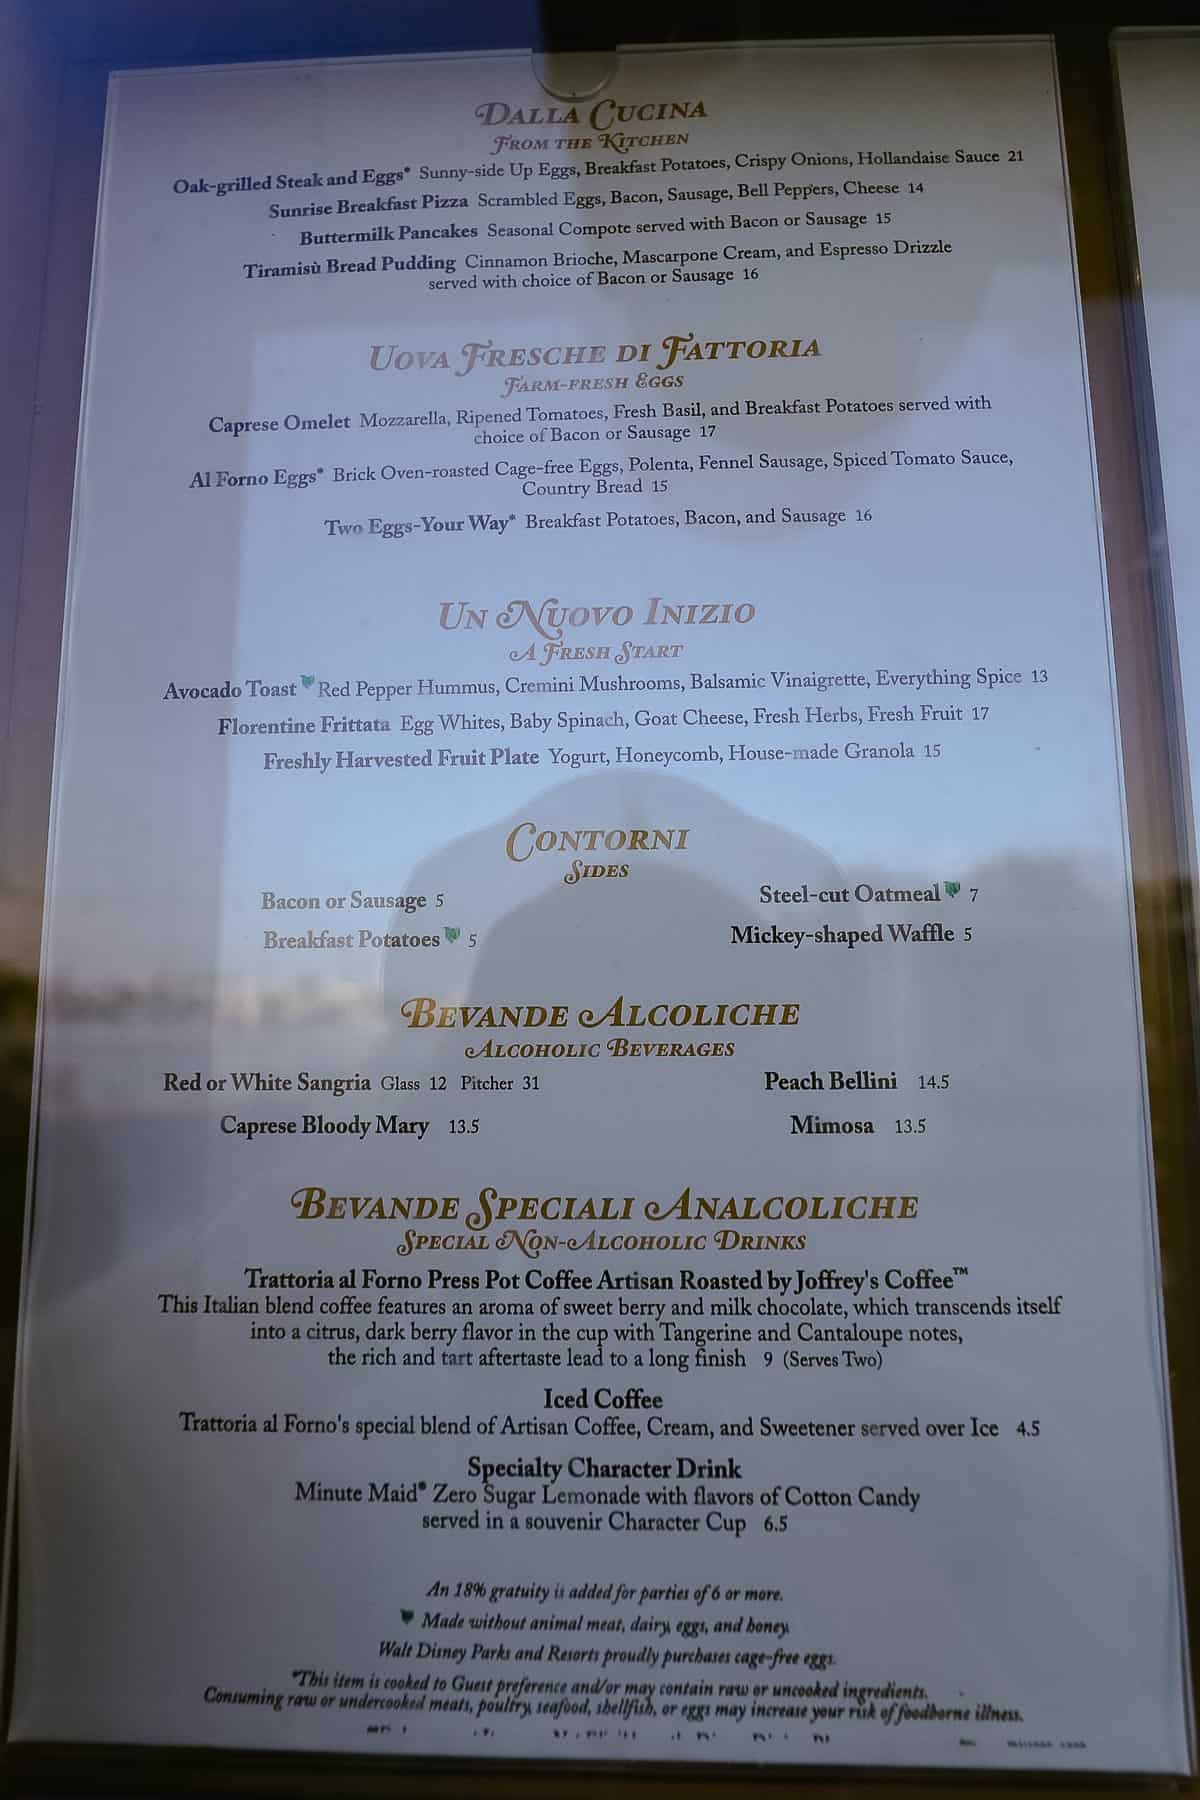 posted menu outside Trattoria al Forno 